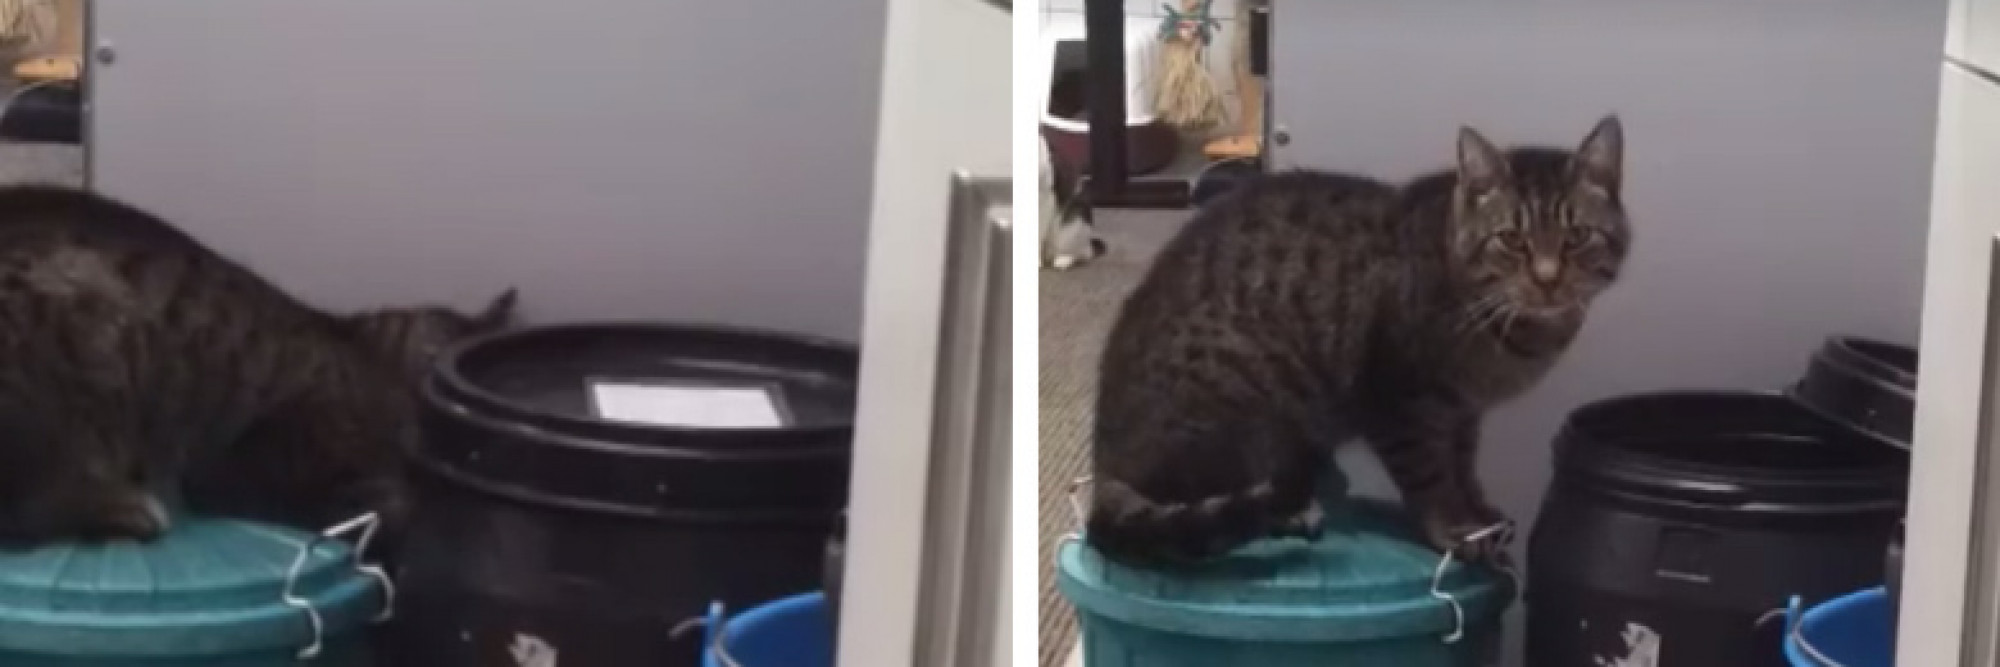 Video: verstopte brokjes niet veilig voor deze slimme kat - Nieuws